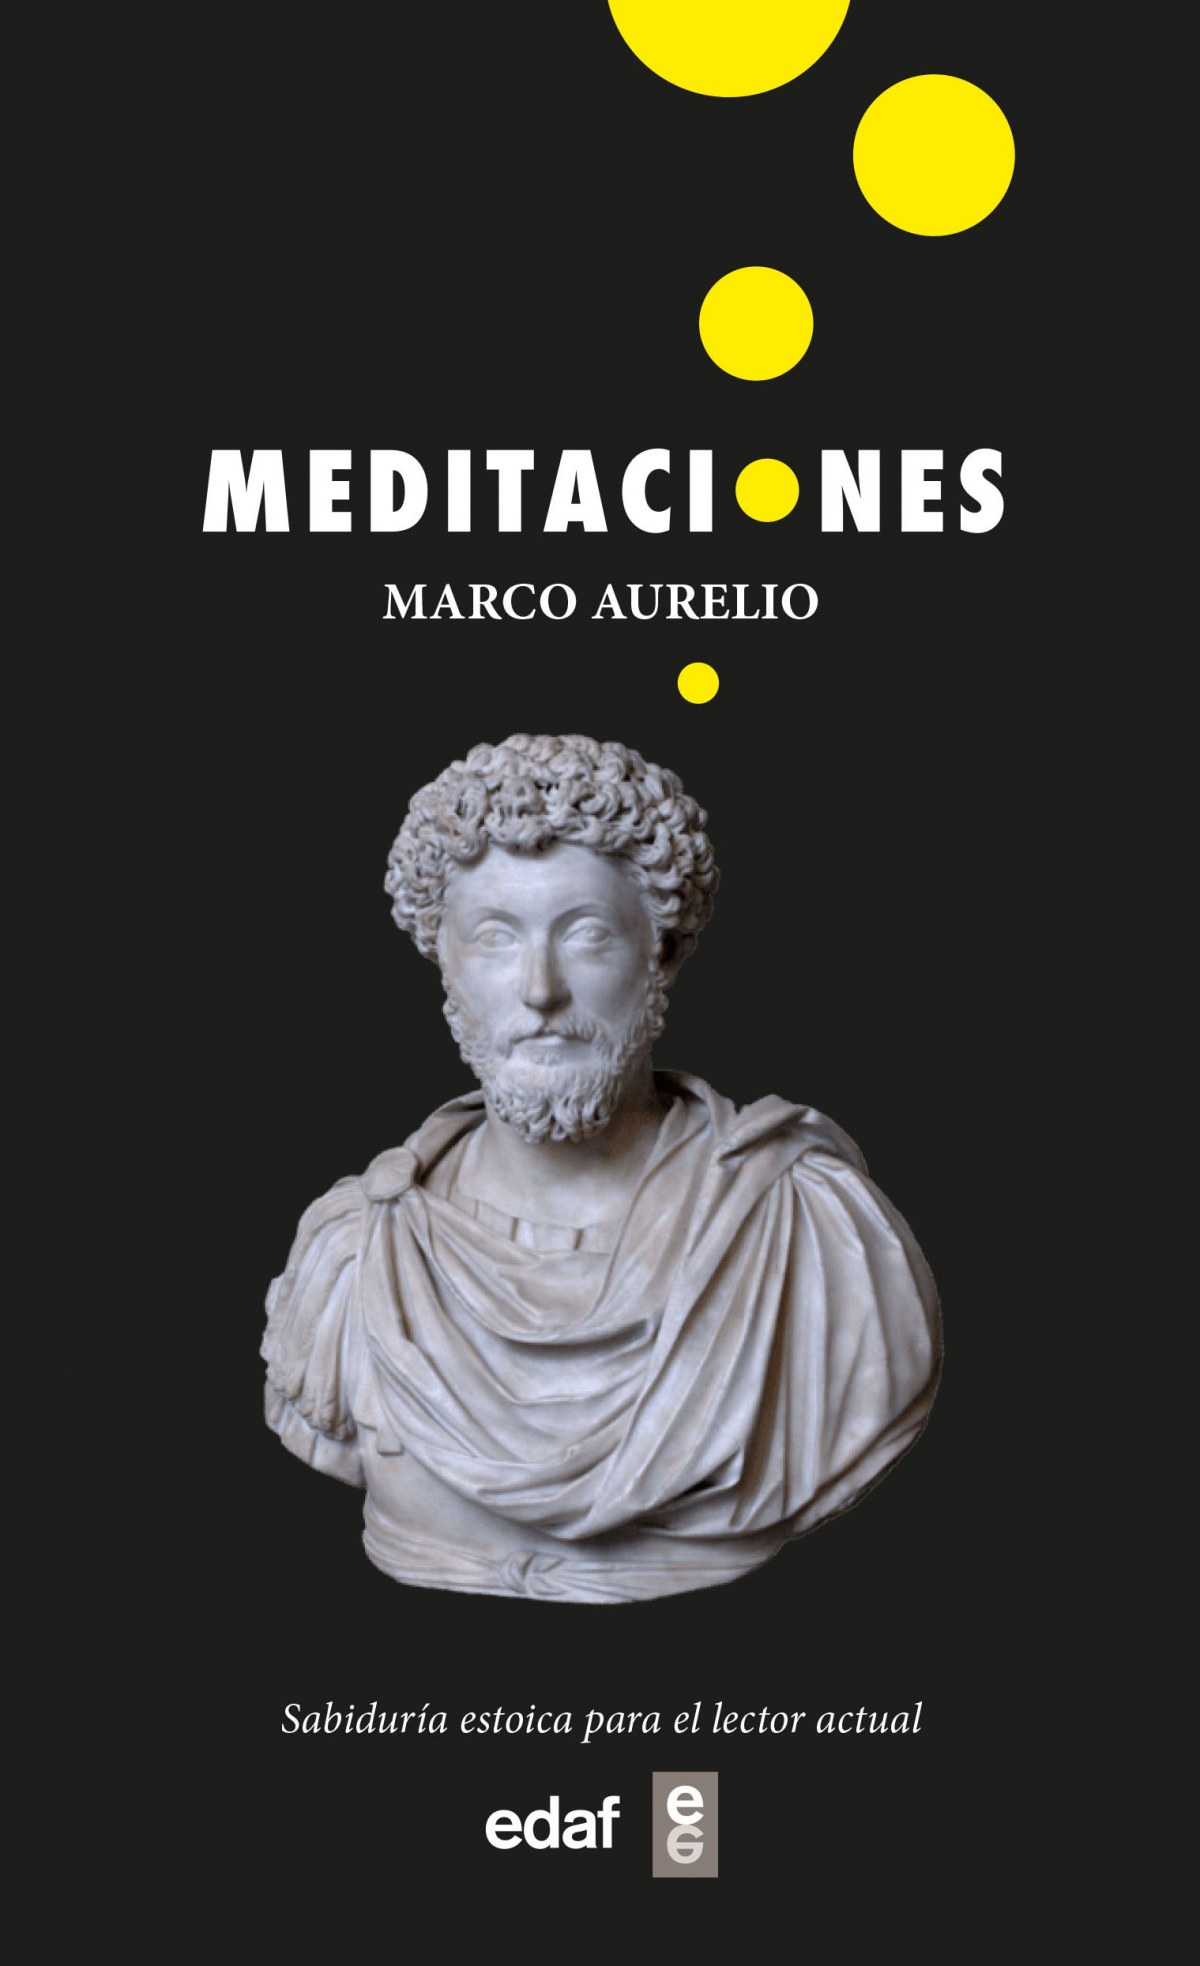 Meditaciones by Marco Aurelio - AbeBooks